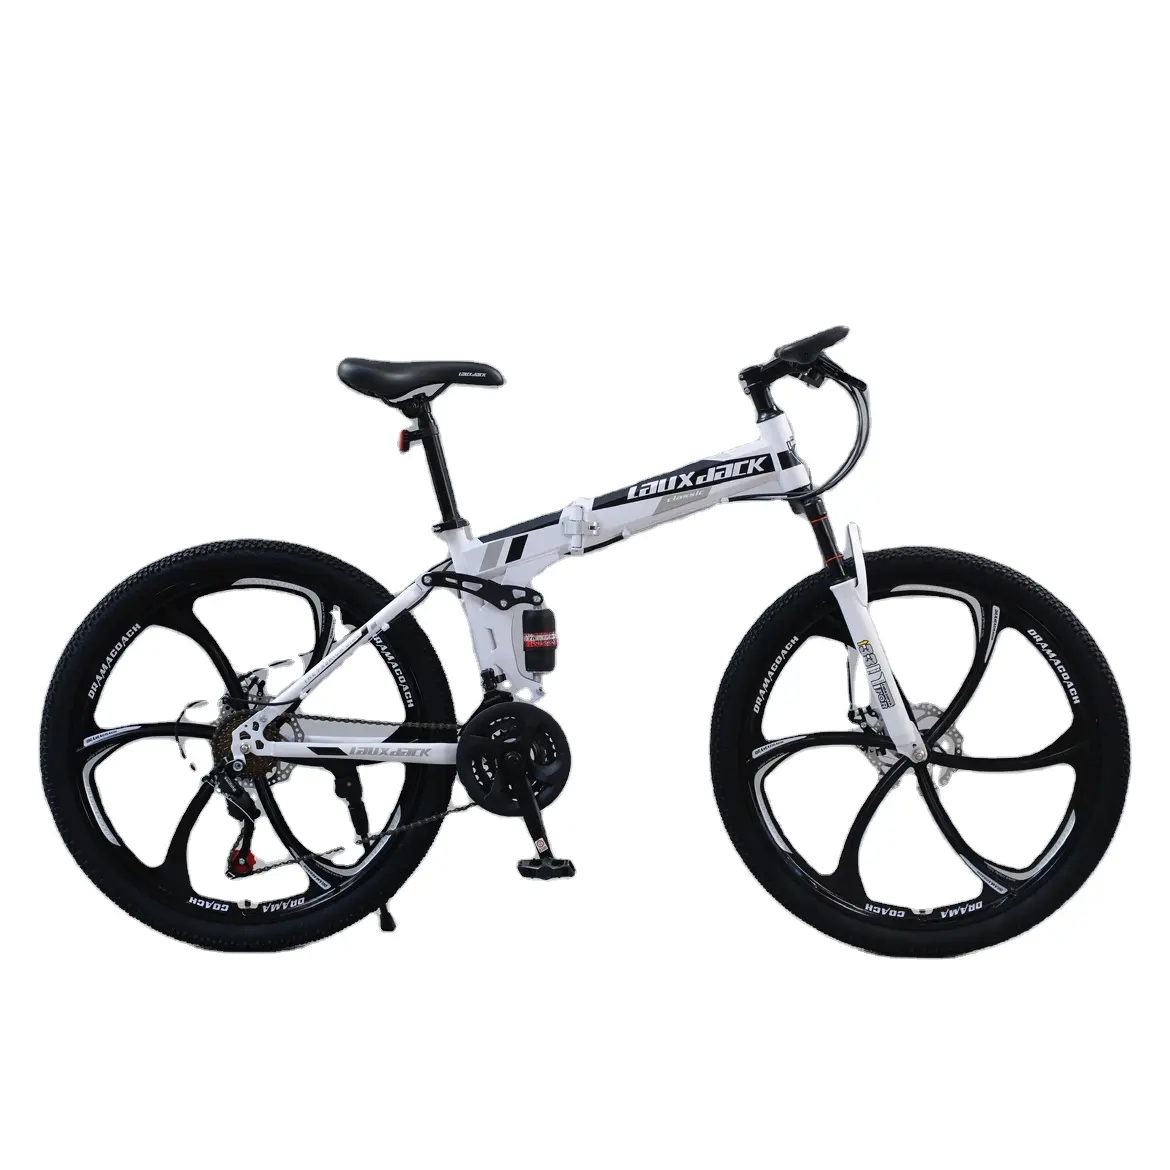 Downhill MTB 29 pulgadas suspensión directa de fábrica horquilla freno de disco 10 velocidades aleación de aluminio bicicleta de montaña